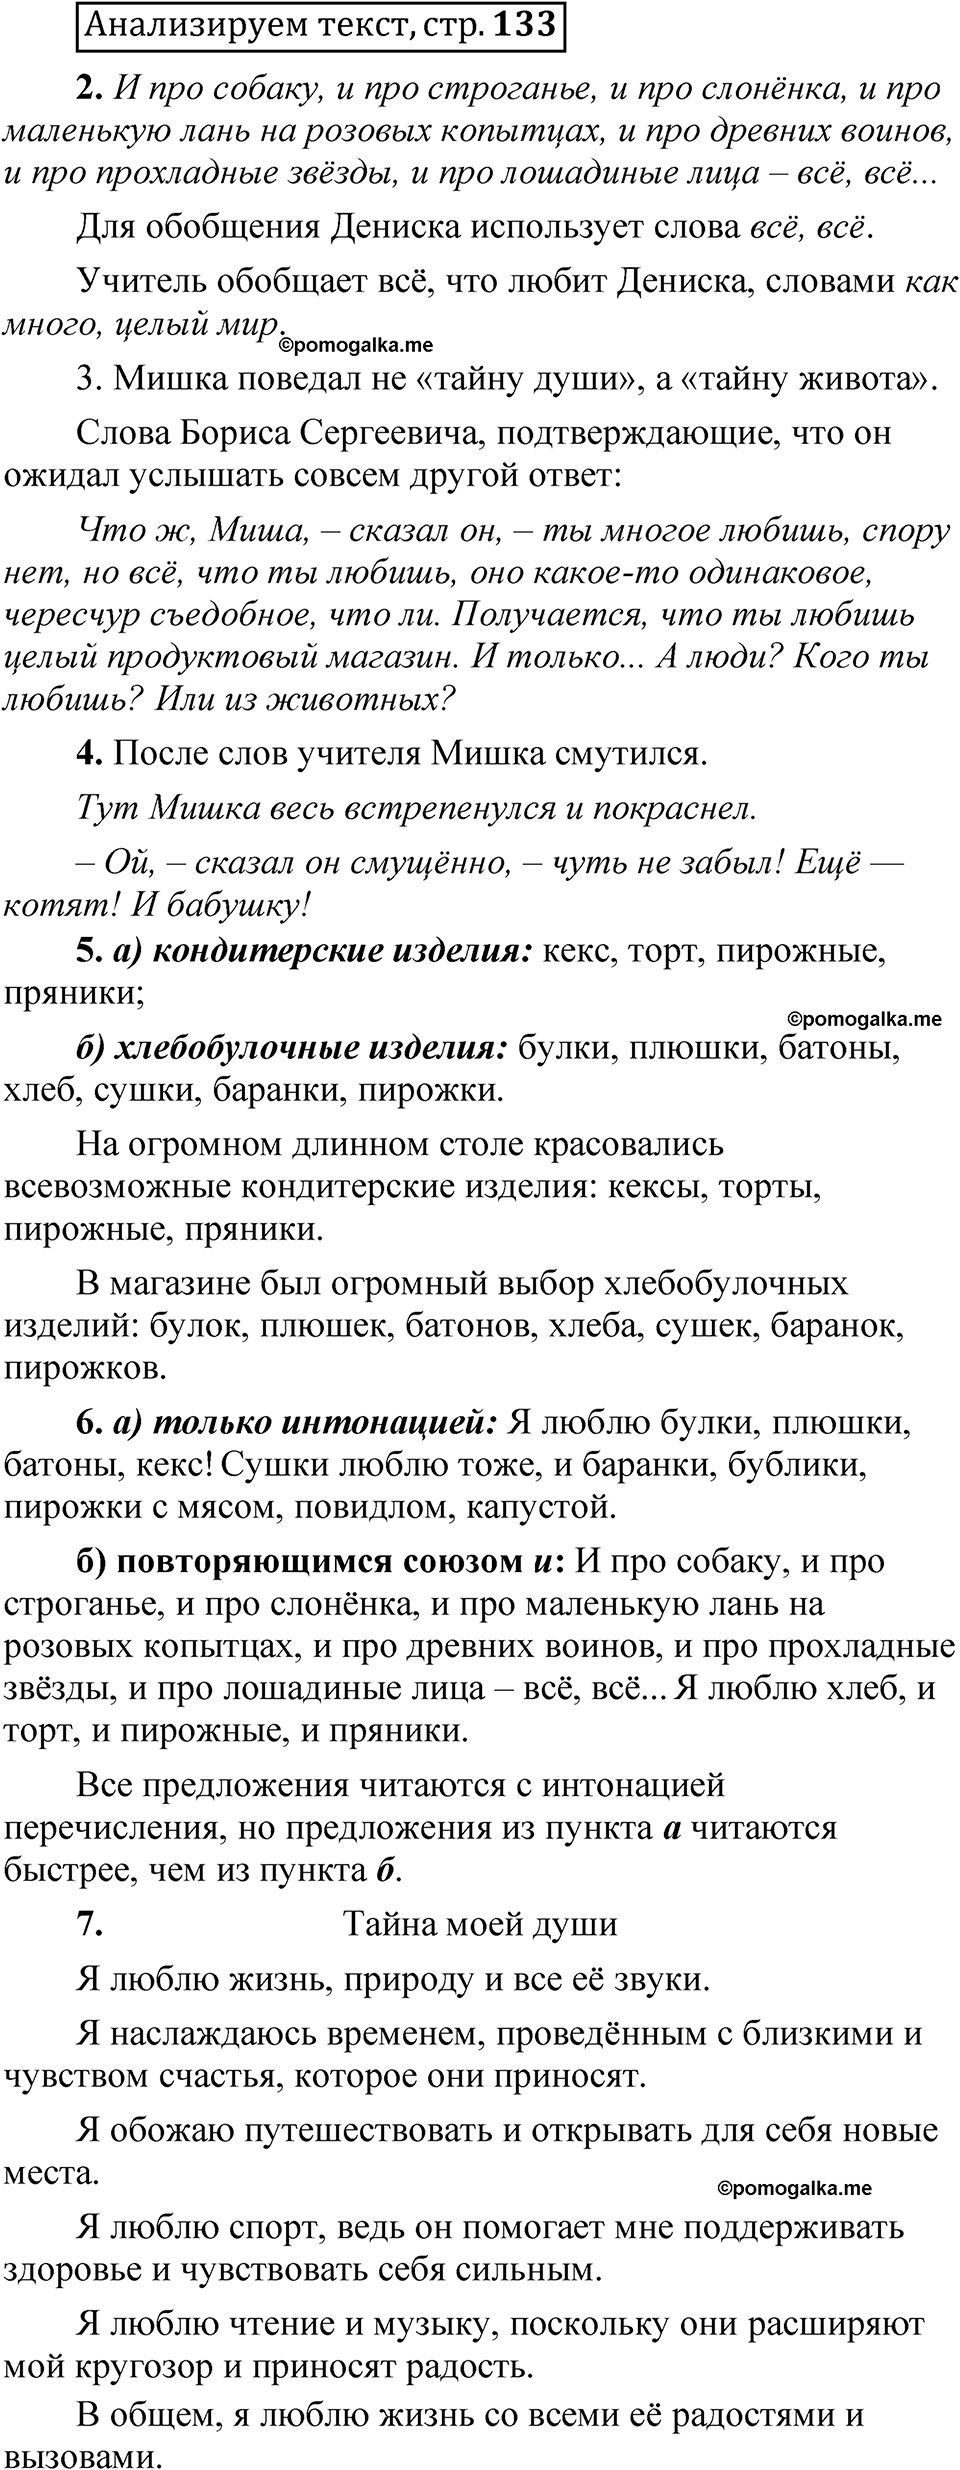 страница 132 Анализируем текст русский язык 5 класс Быстрова, Кибирева 1 часть 2021 год